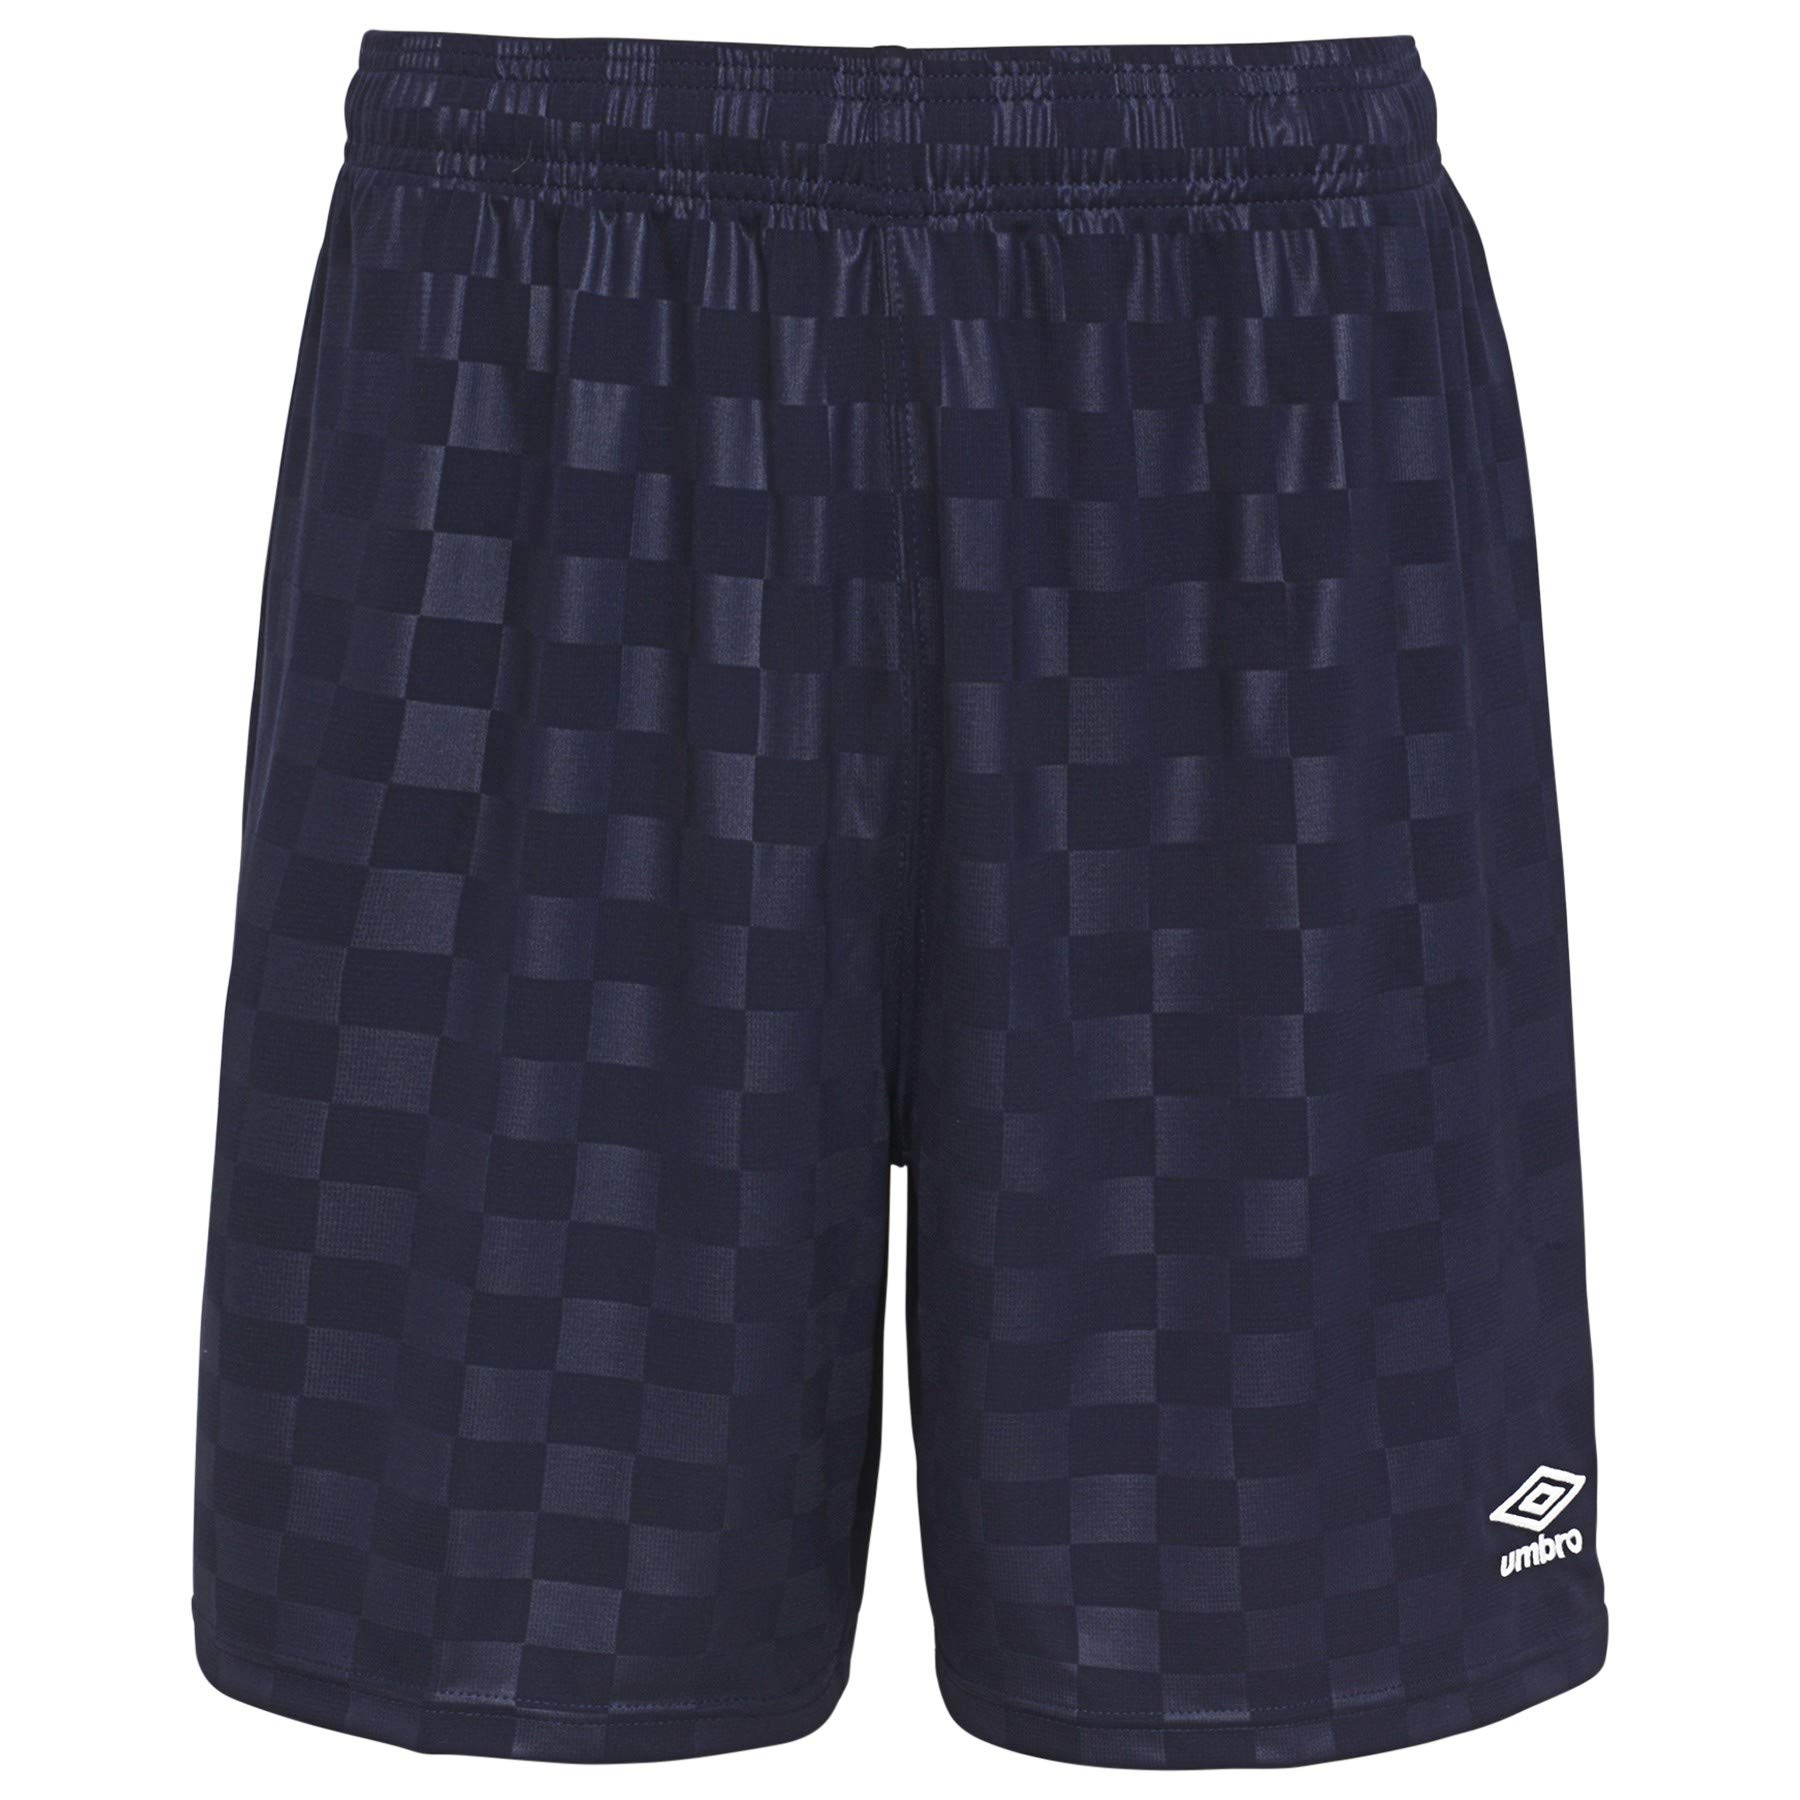 Umbro Herren Checkered Shorts, Marineblau, Mittel